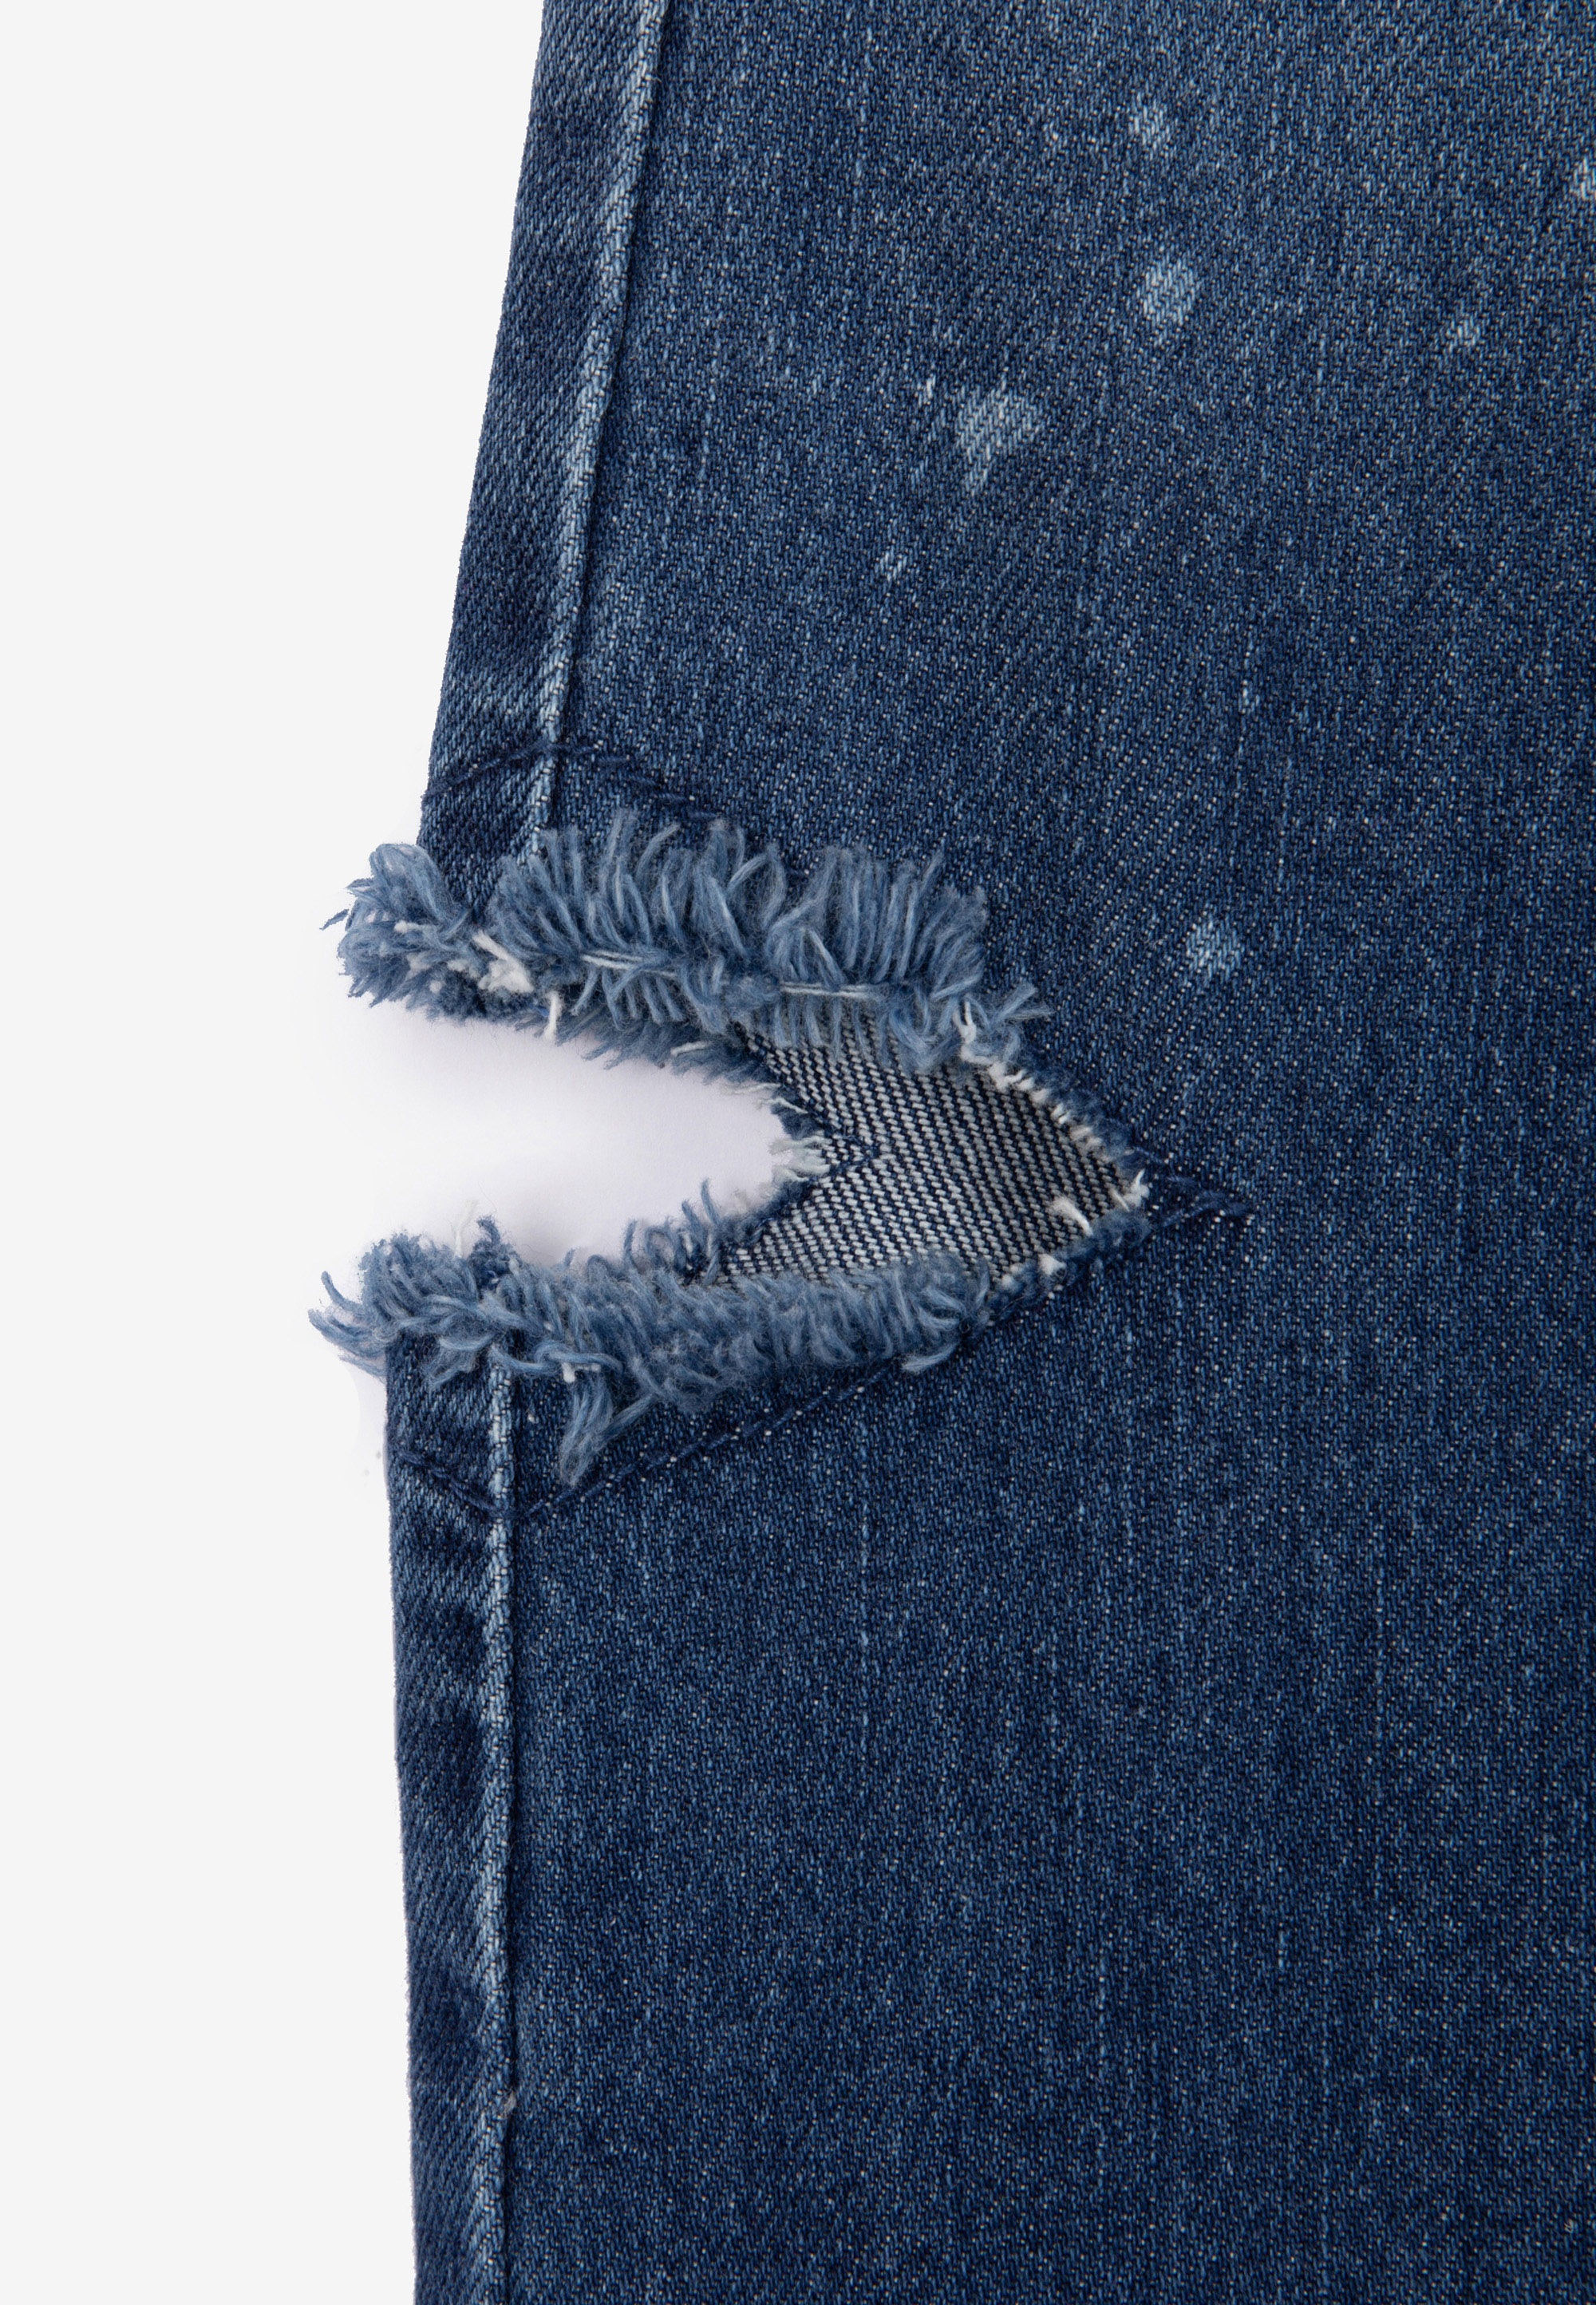 Gulliver Bequeme Jeans, mit seitlichen Schlitzen